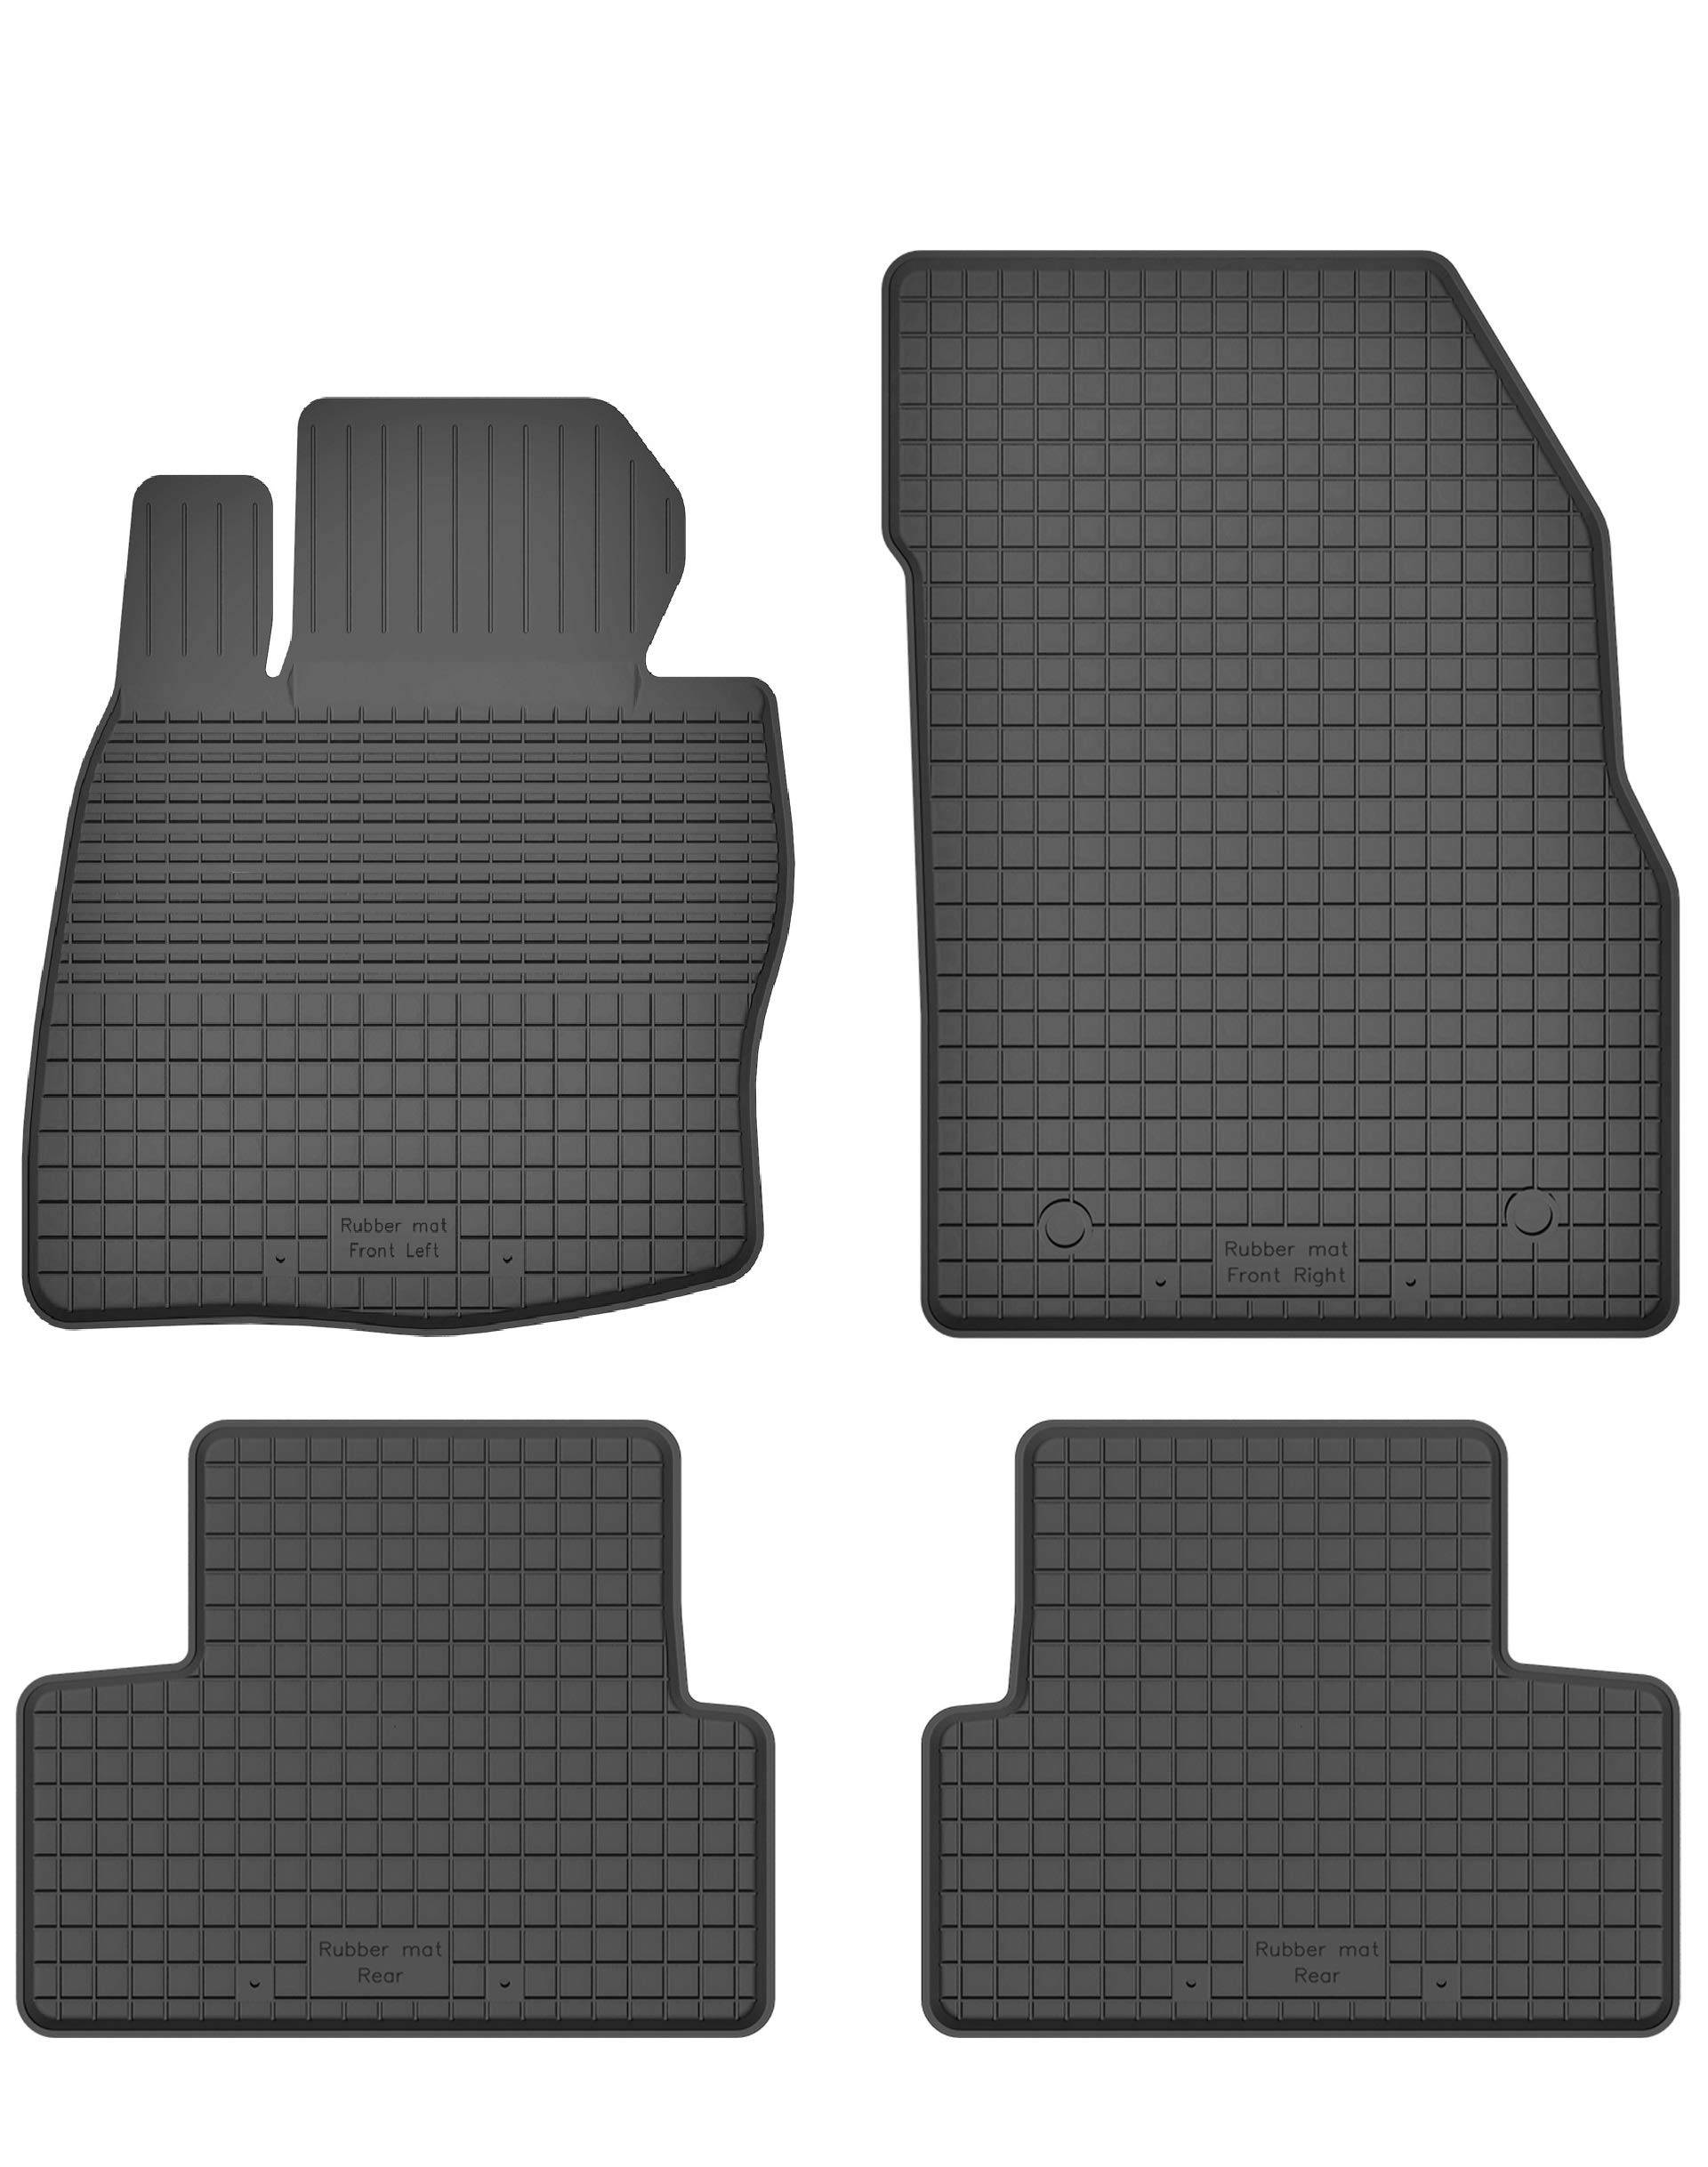 Gummimatten Fußmatten 1.5 cm Rand kompatibel mit BMW 2 Active Tourer (ab 2012) ideal angepasst 4 -Teile EIN Set von KO-RUBBERMAT